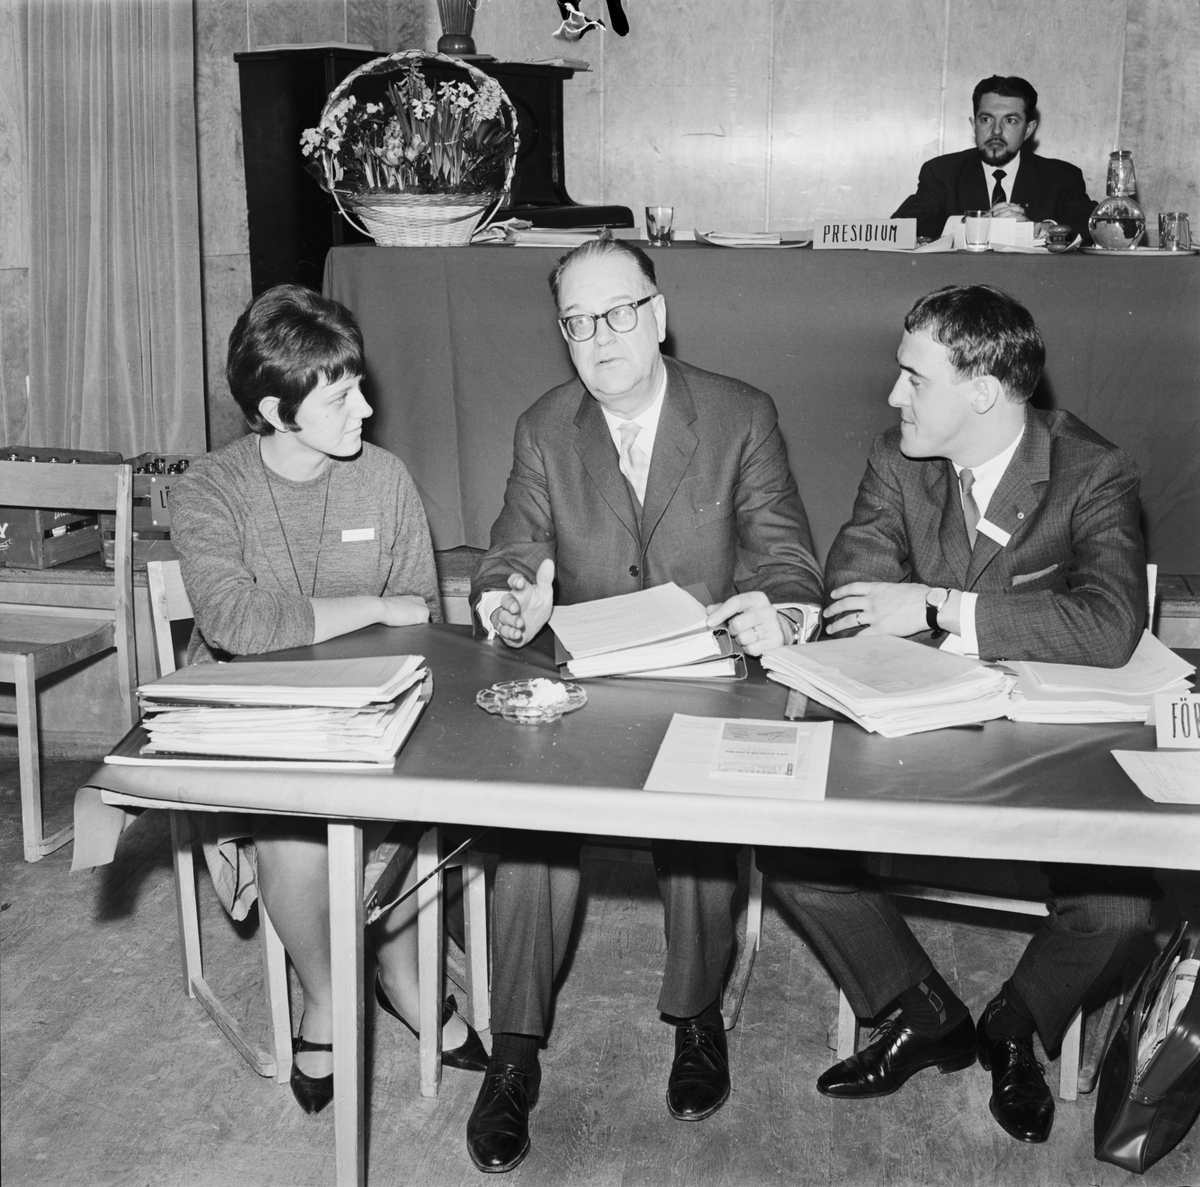 Socialdemokratiska studentförbundet - "tredagarsförhandlingarnas främste talare, Tage Erlander", Uppsala 1963